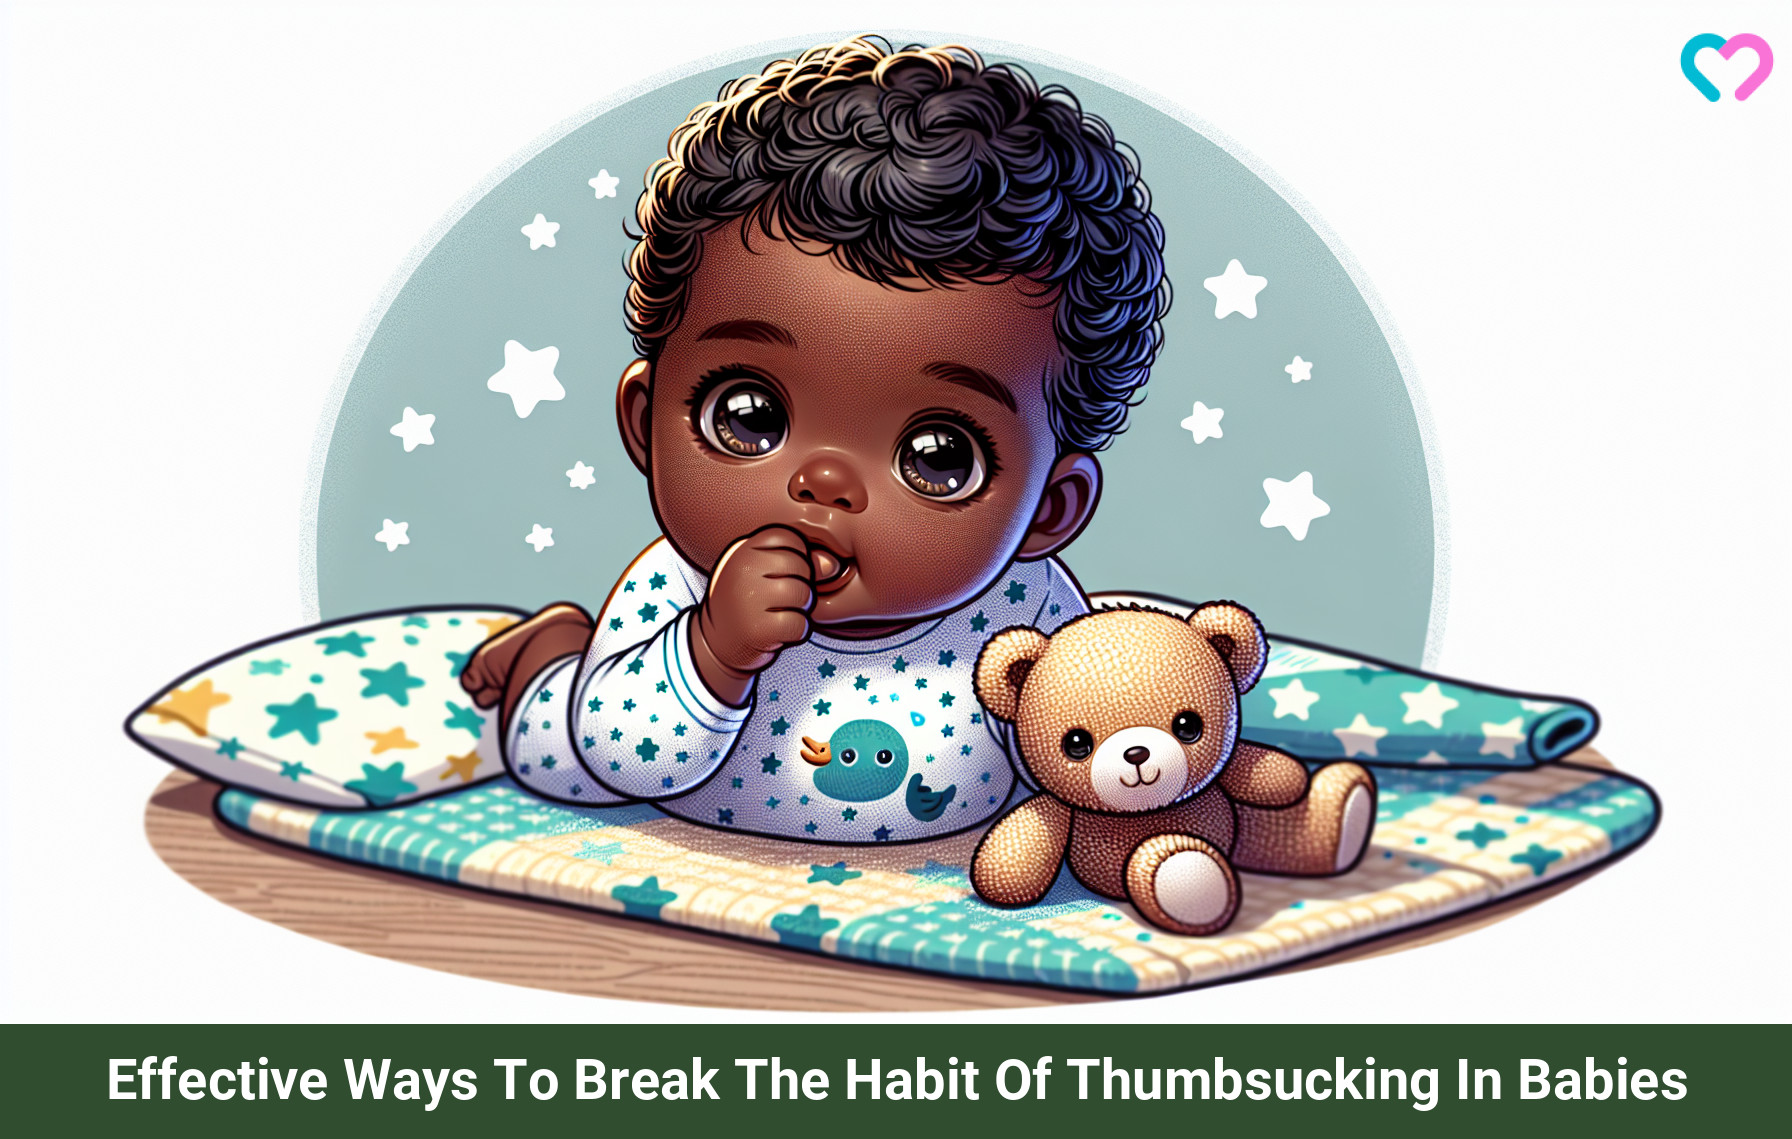 baby sucking thumb_illustration